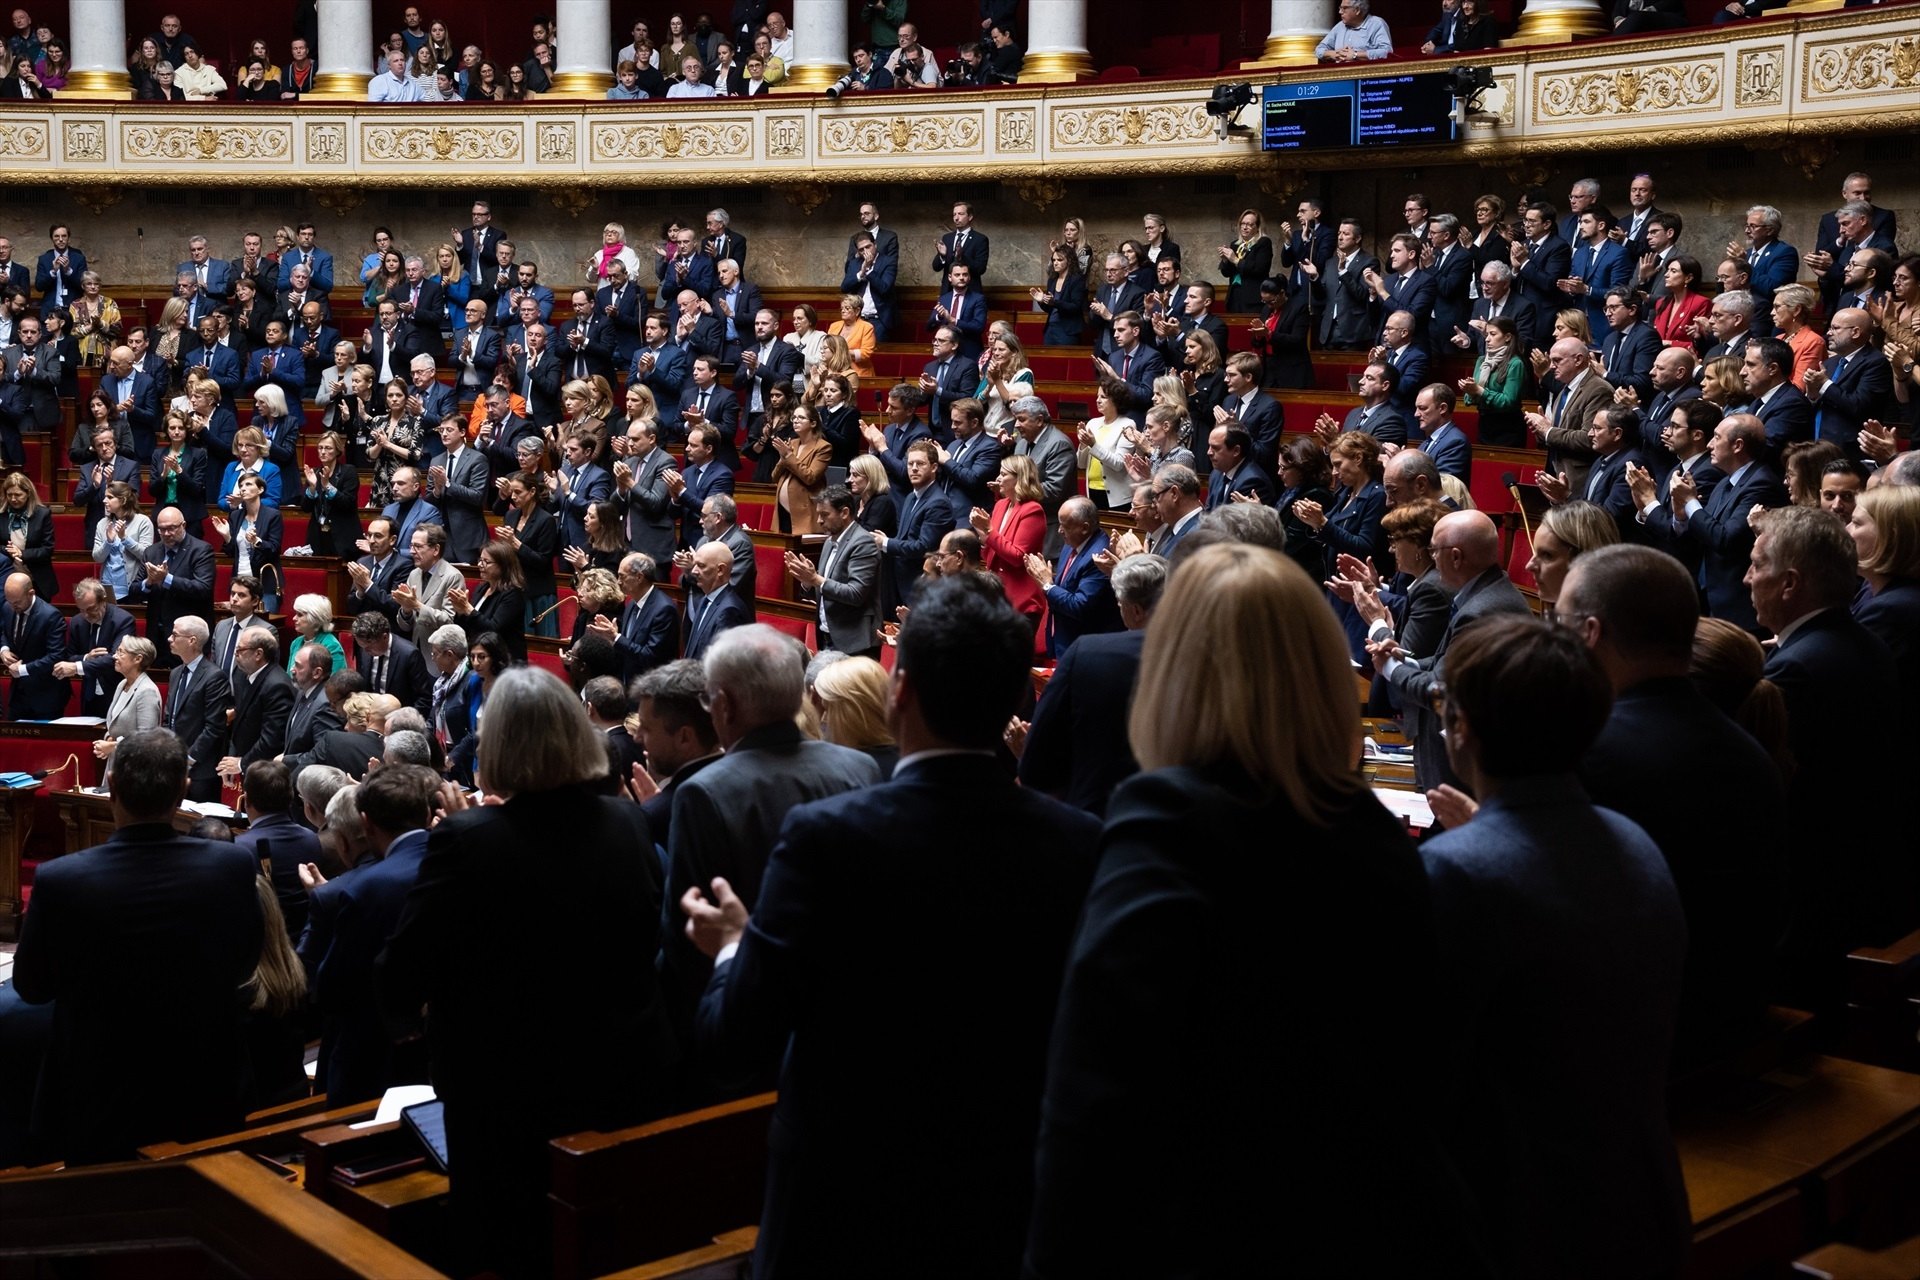 Una diputada francesa rompe el silencio en la Asamblea Nacional: "Hay noches en que circula droga"